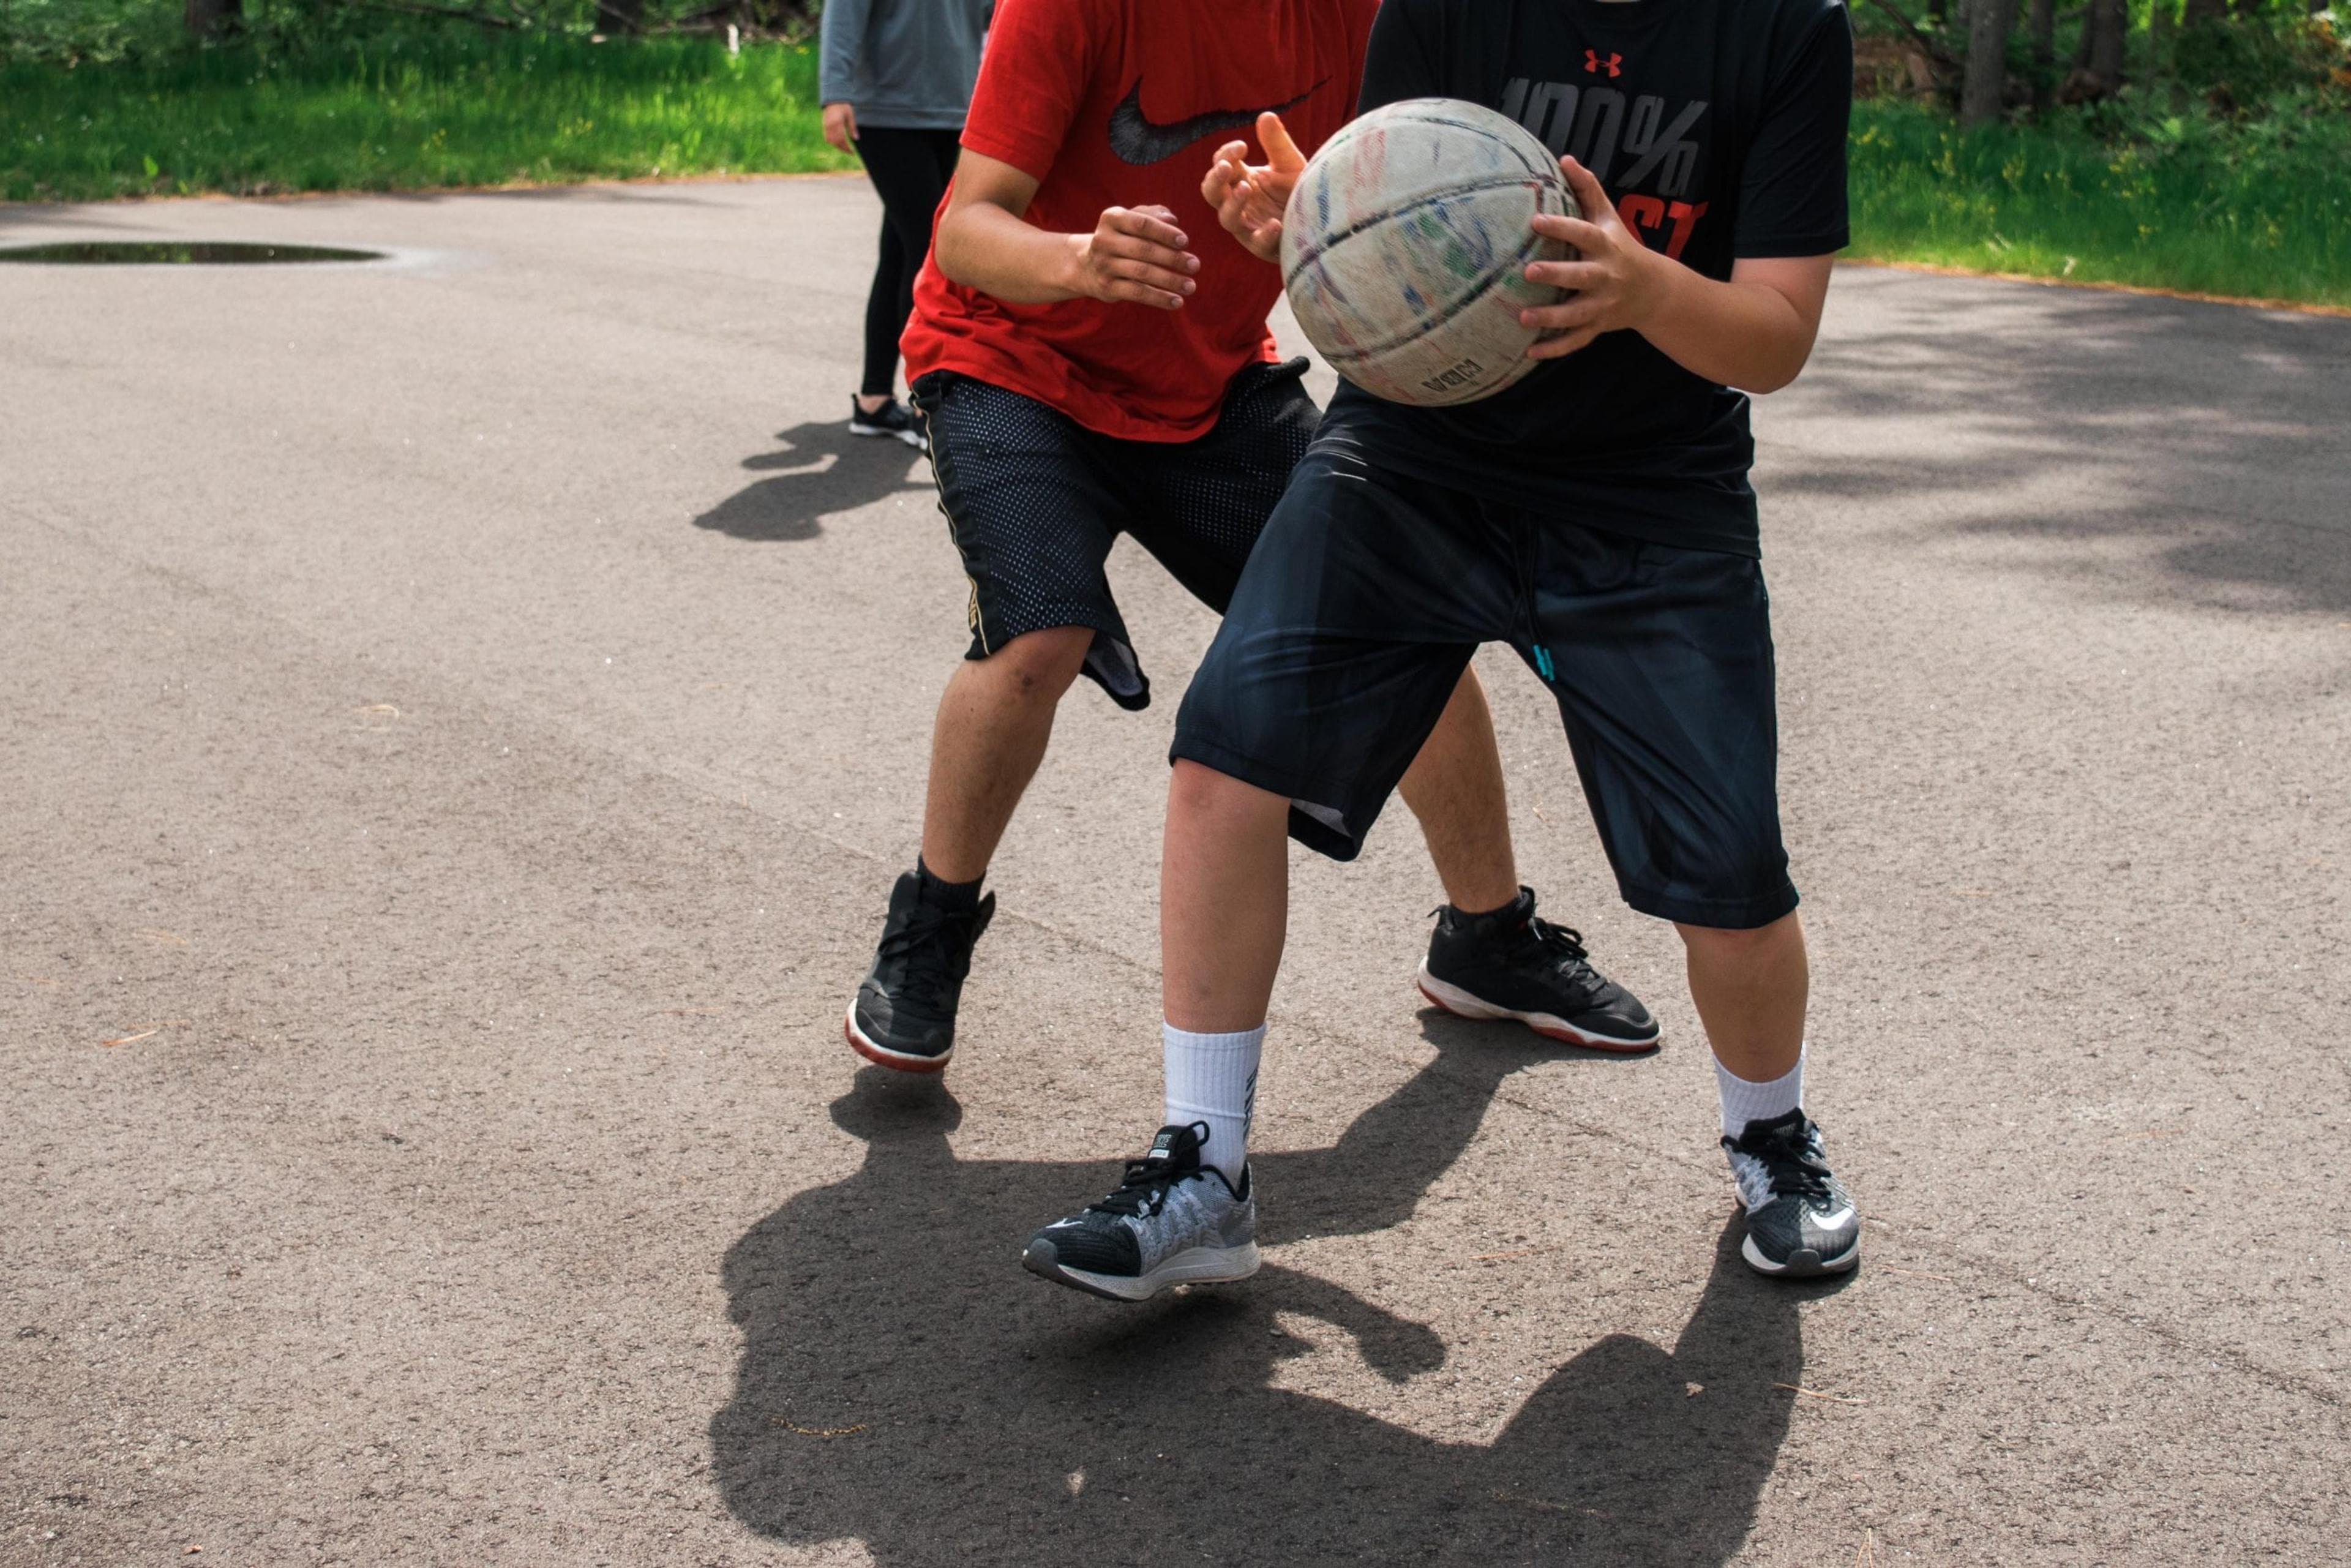 Teens at Great Lakes playing basketball